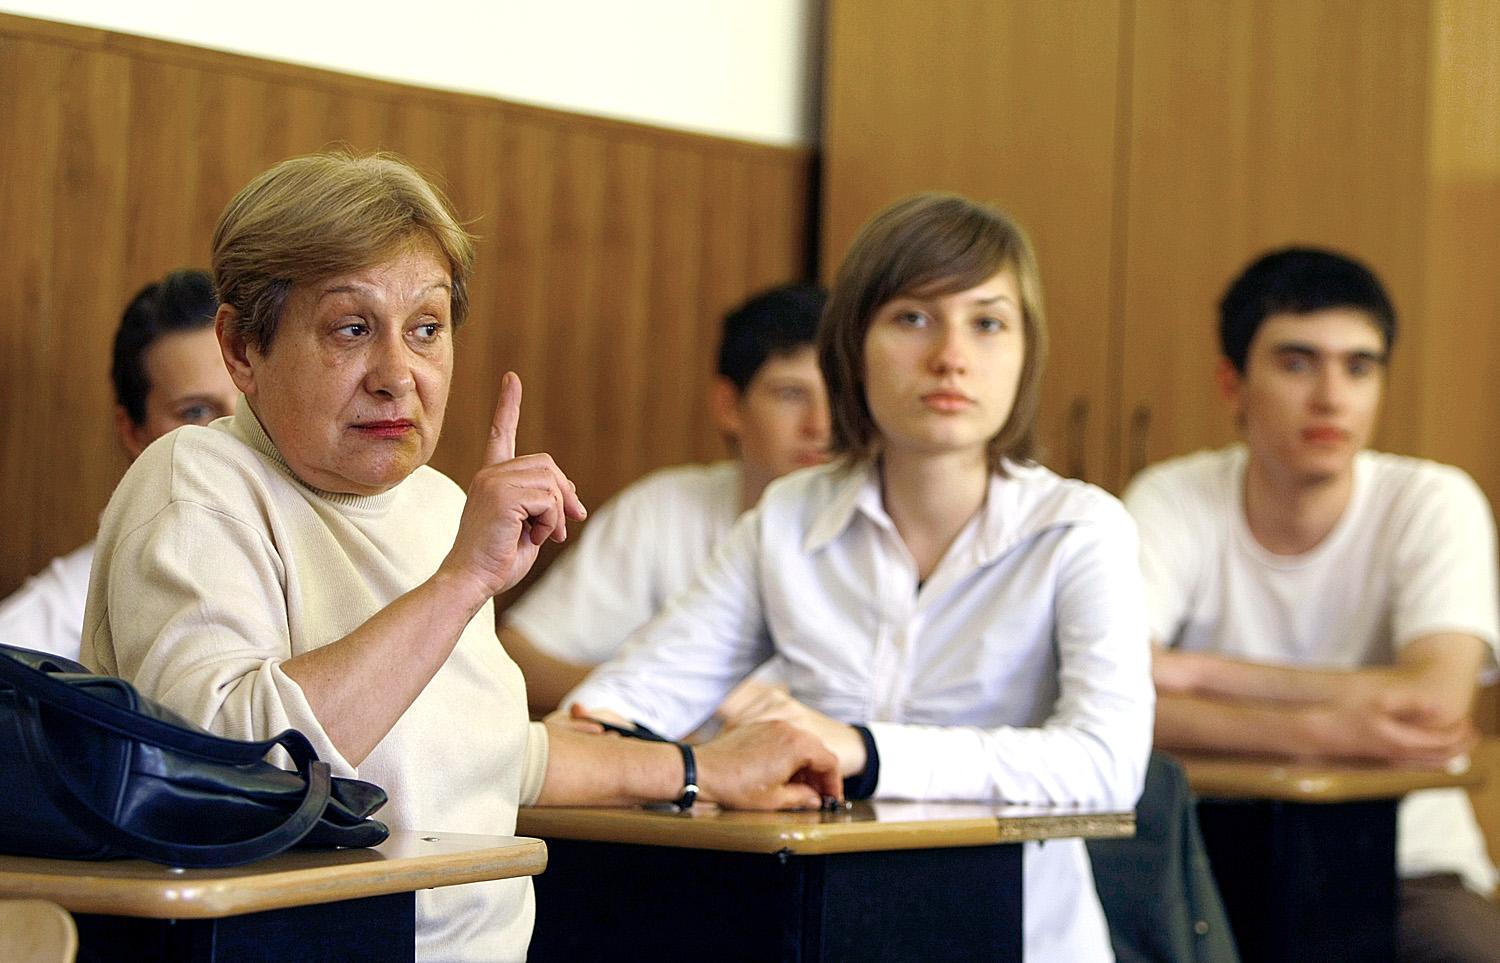 Román tanár az iskolapadban